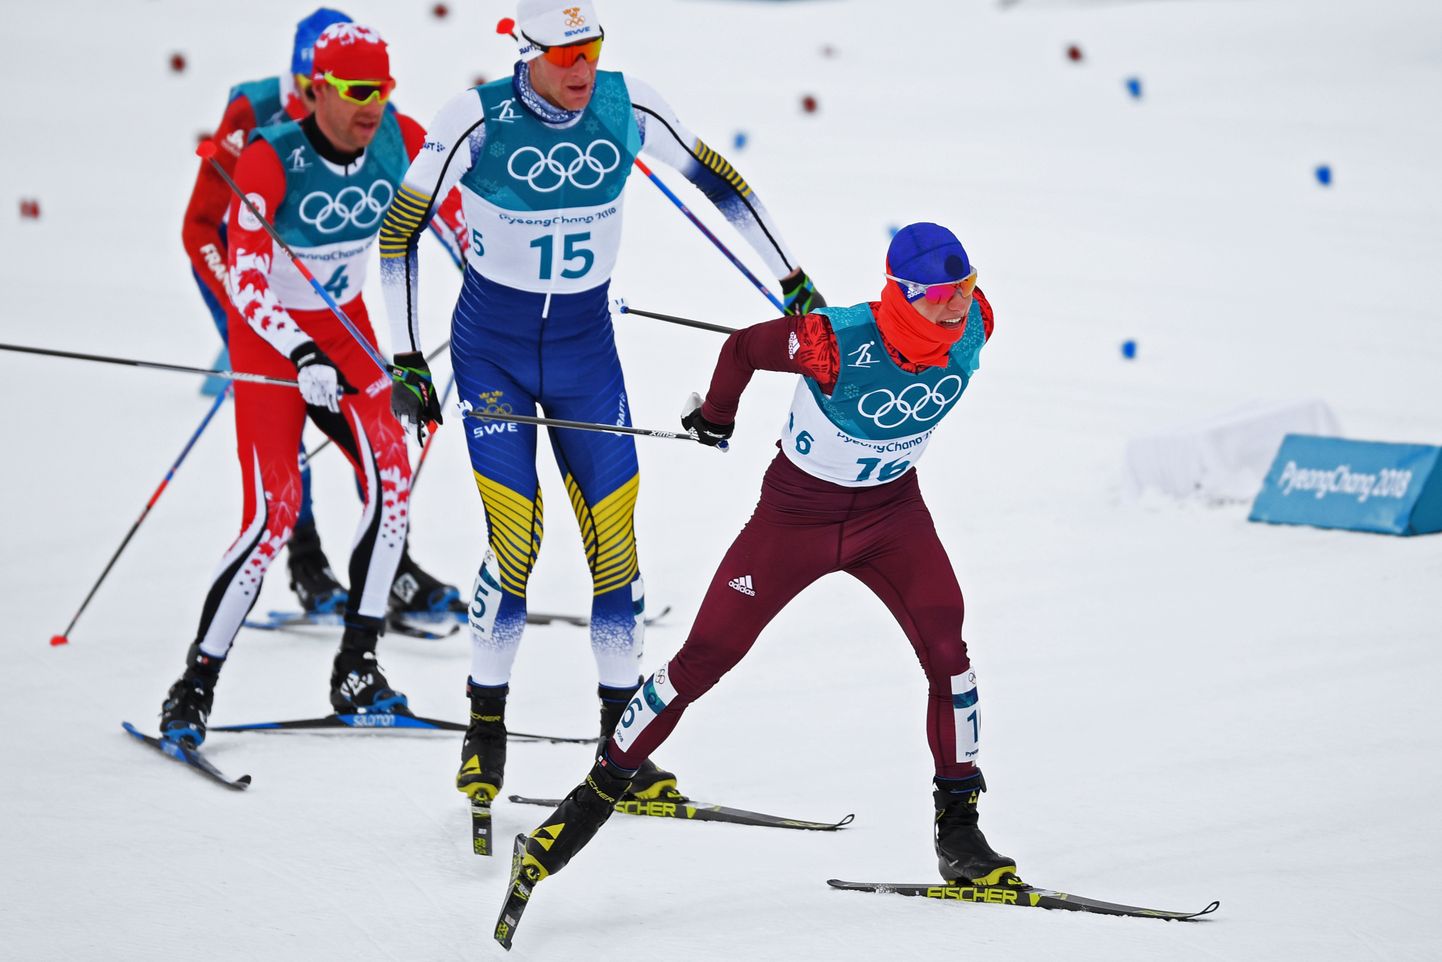 Россиянин Денис Спицов (номер 16) и Алекс Харви (номер 4) ведут борьбу на трассе Пхенчхана в лыжном скиатлоне